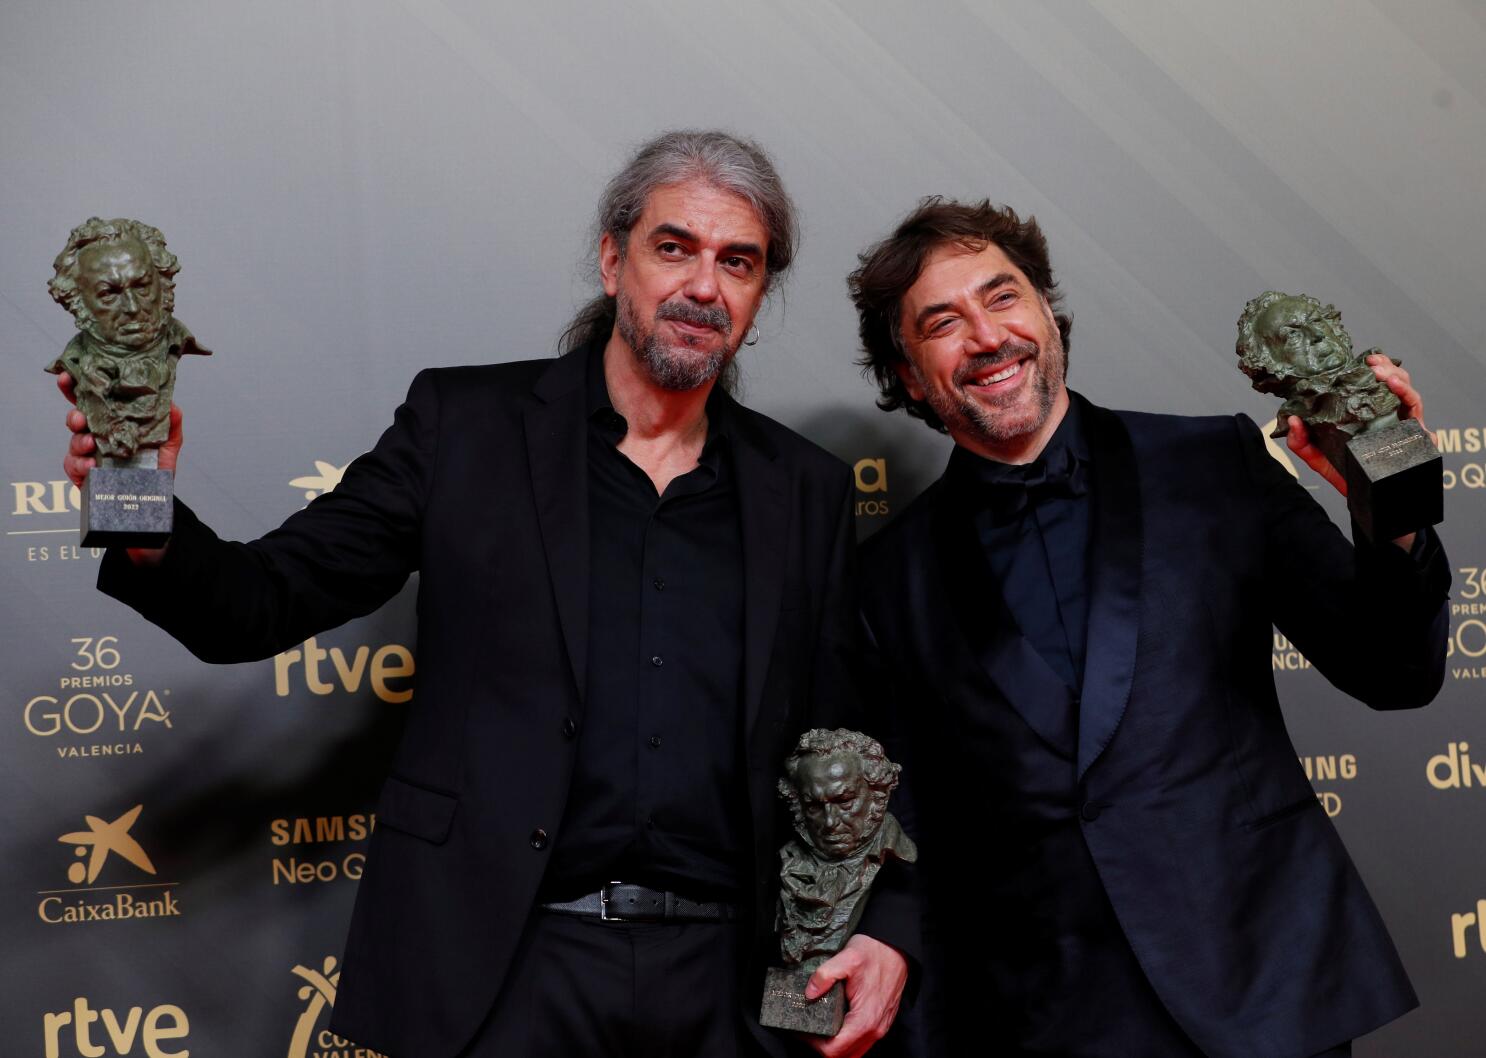 El buen patrón' triunfa en los Goya, con premio para Chile - Los Angeles  Times